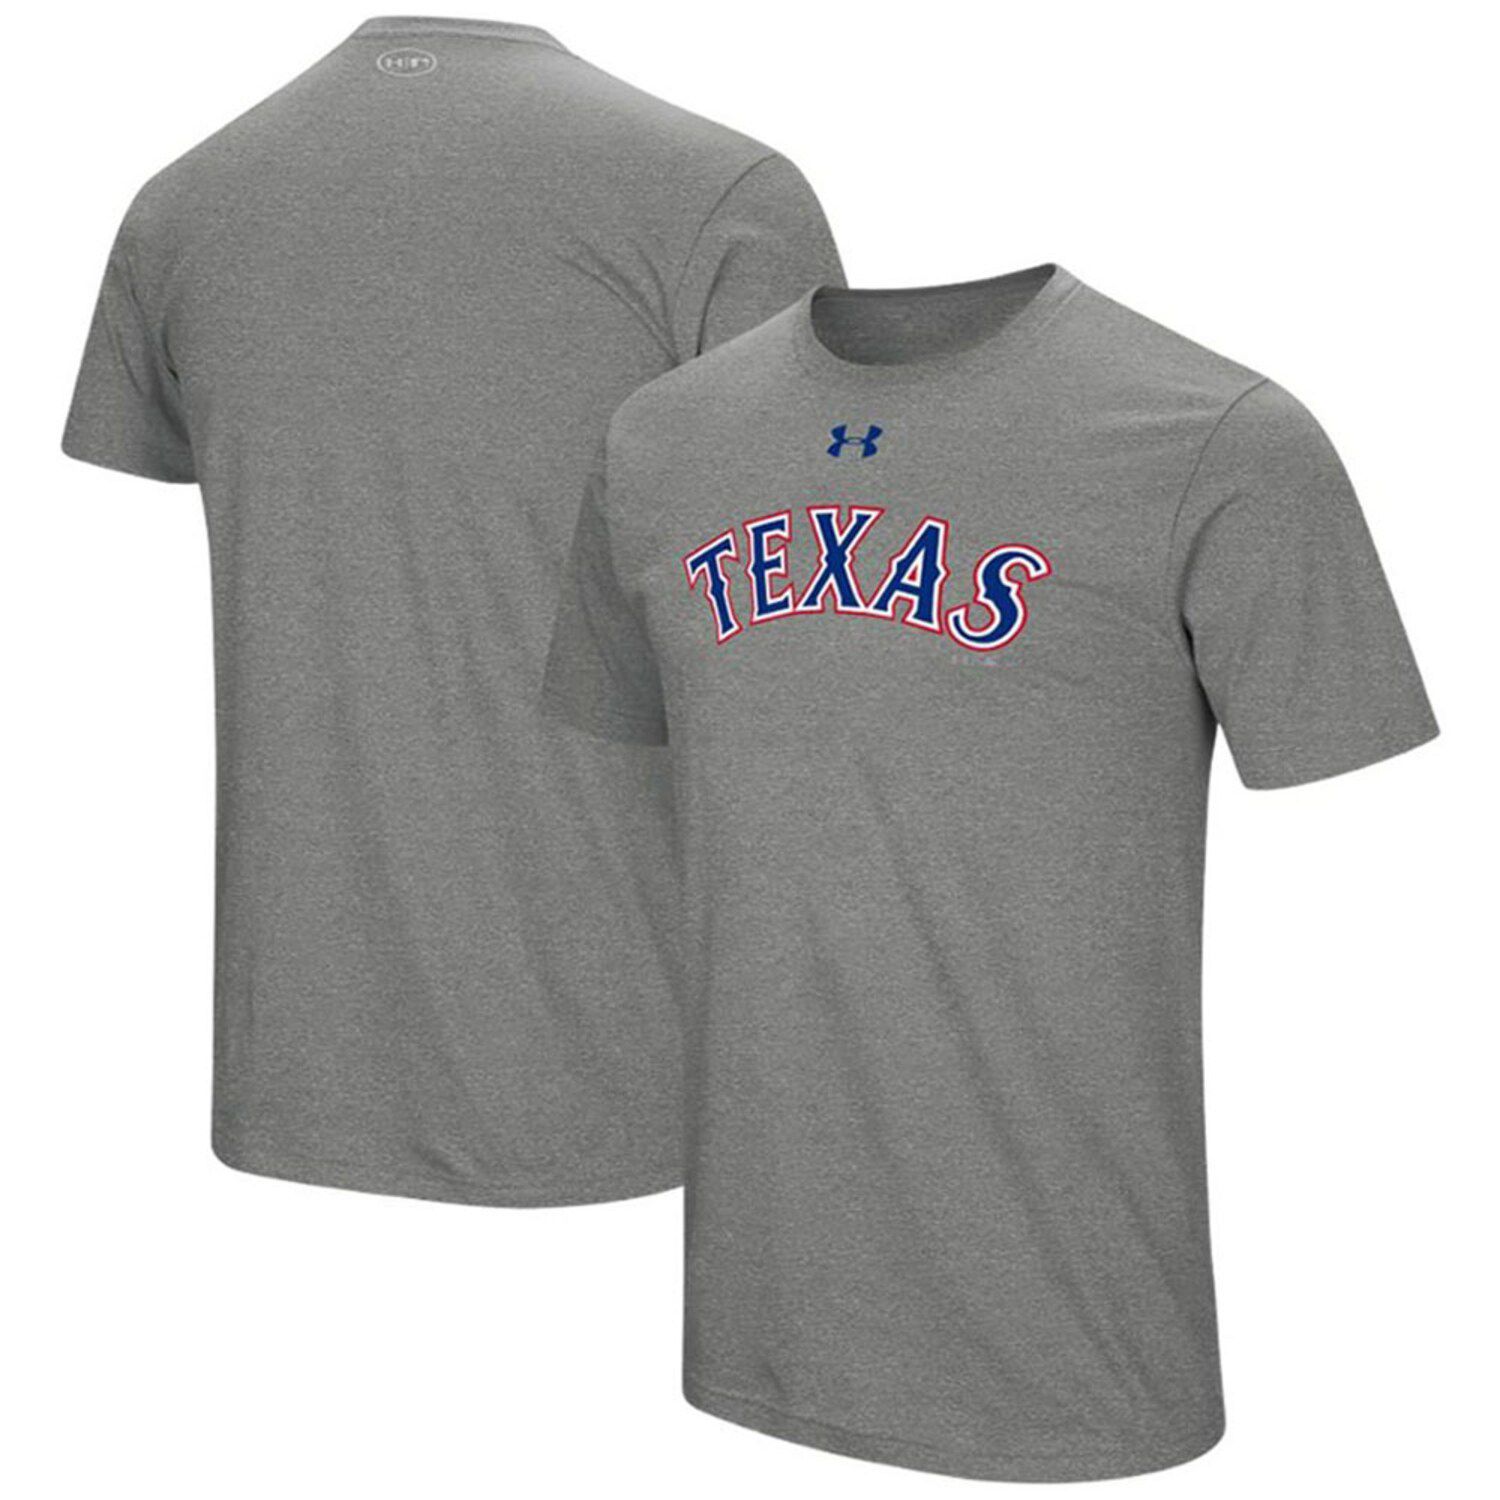 texas rangers t shirt dress